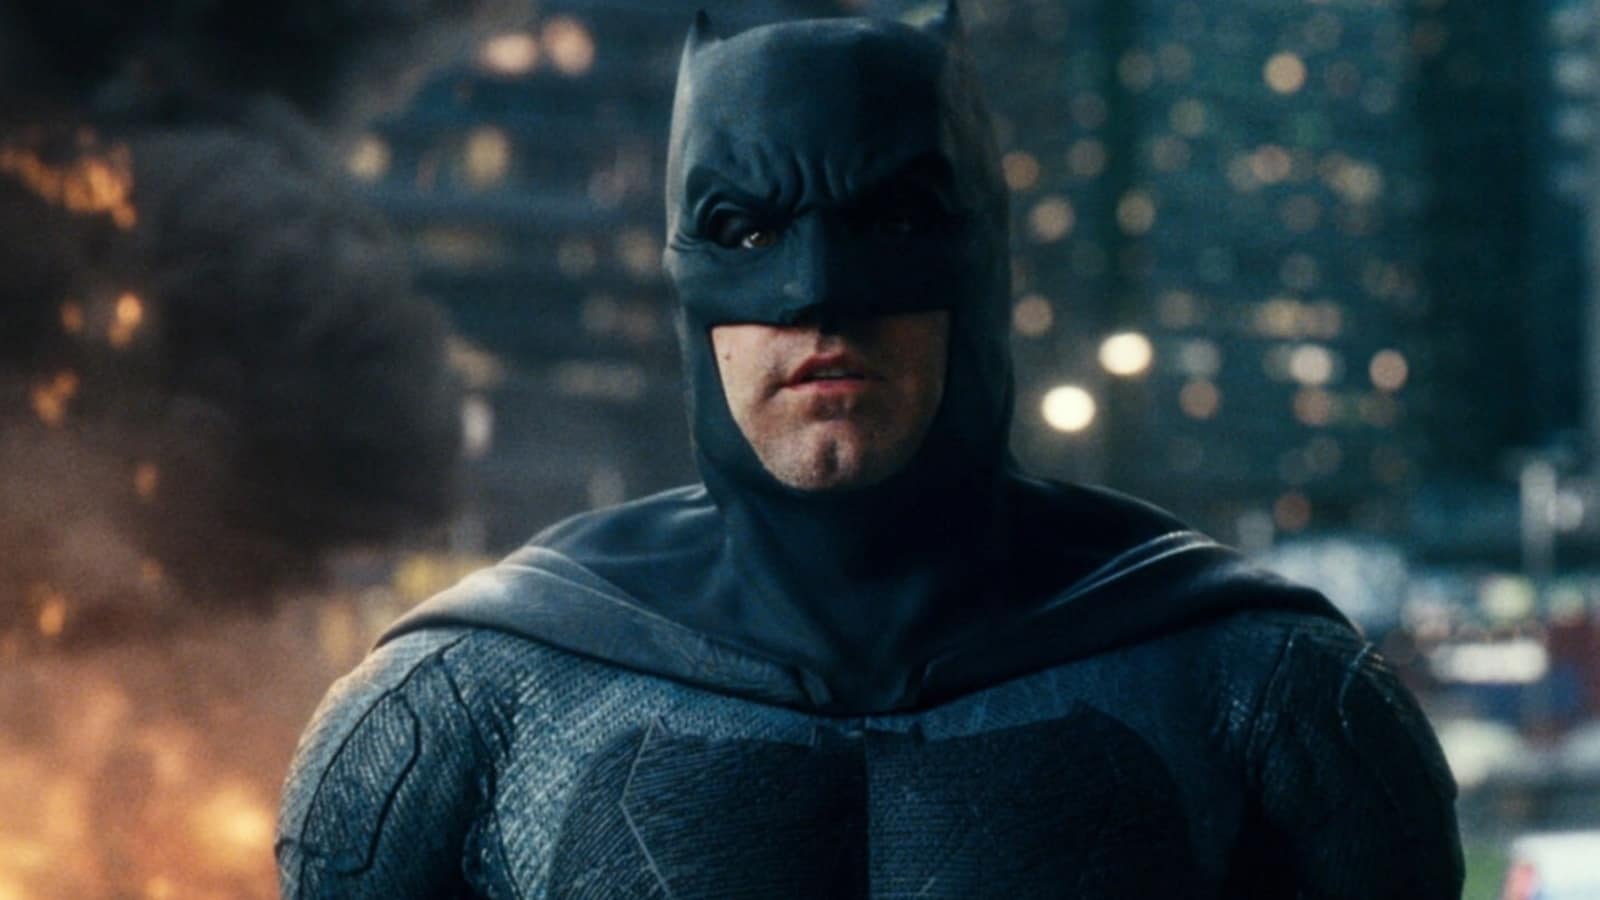 Ben Afflack as Batman